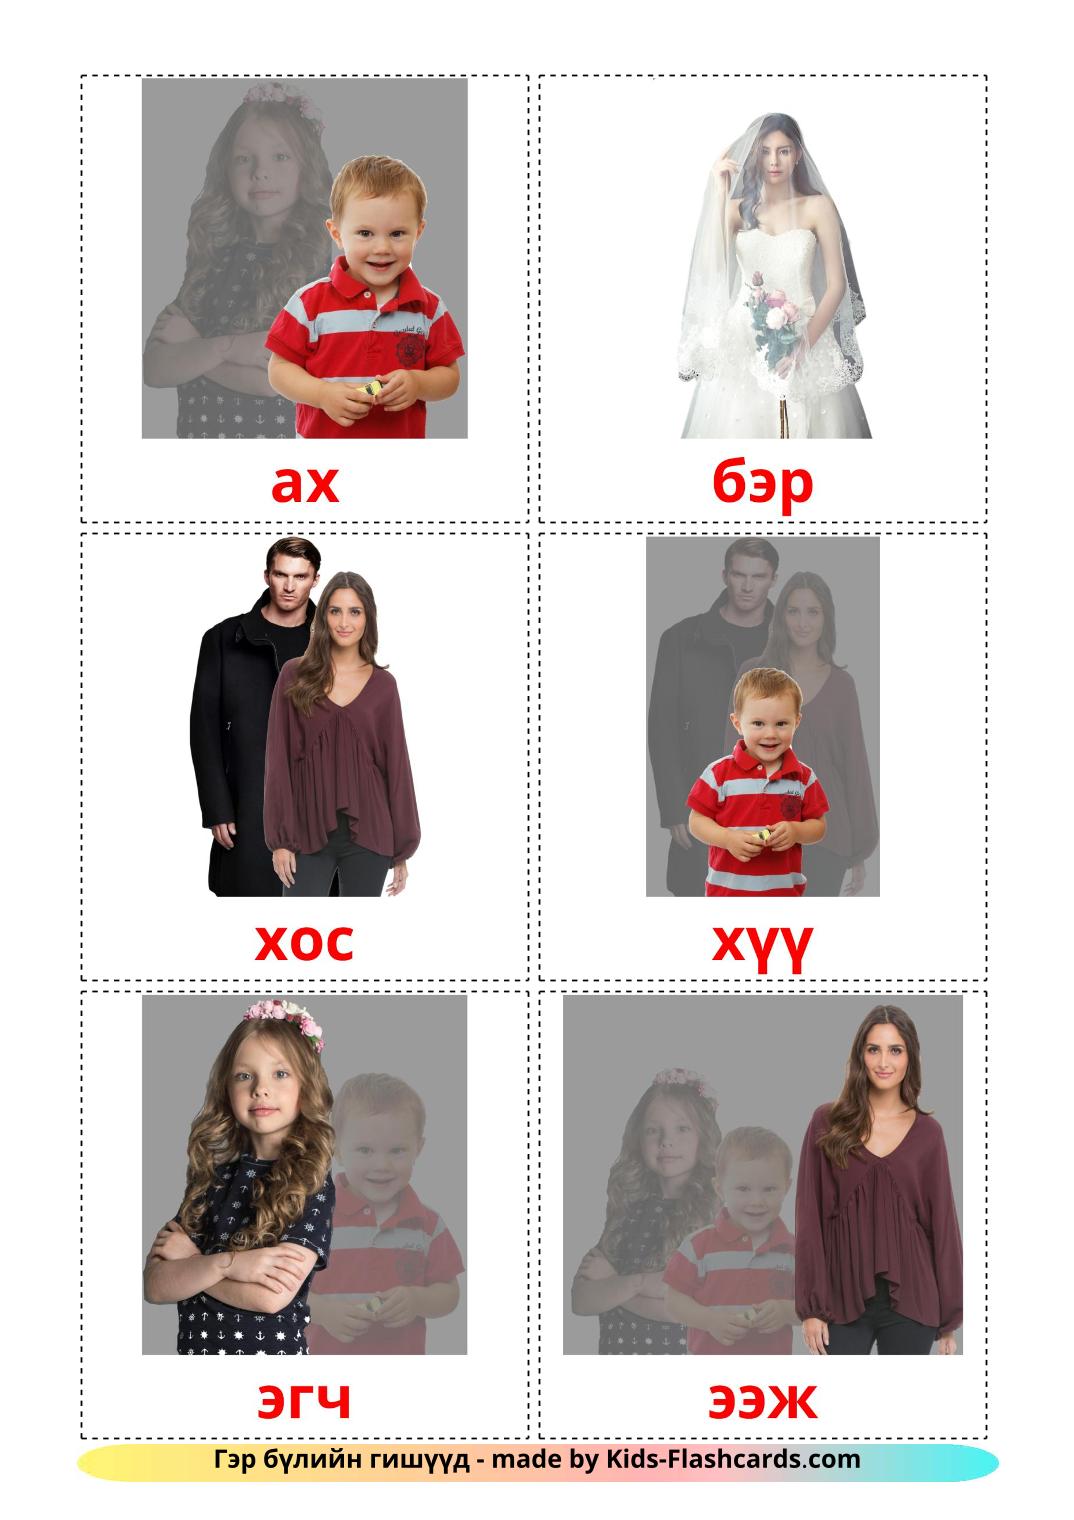 Les Membres de la Famille - 32 Flashcards mongol imprimables gratuitement